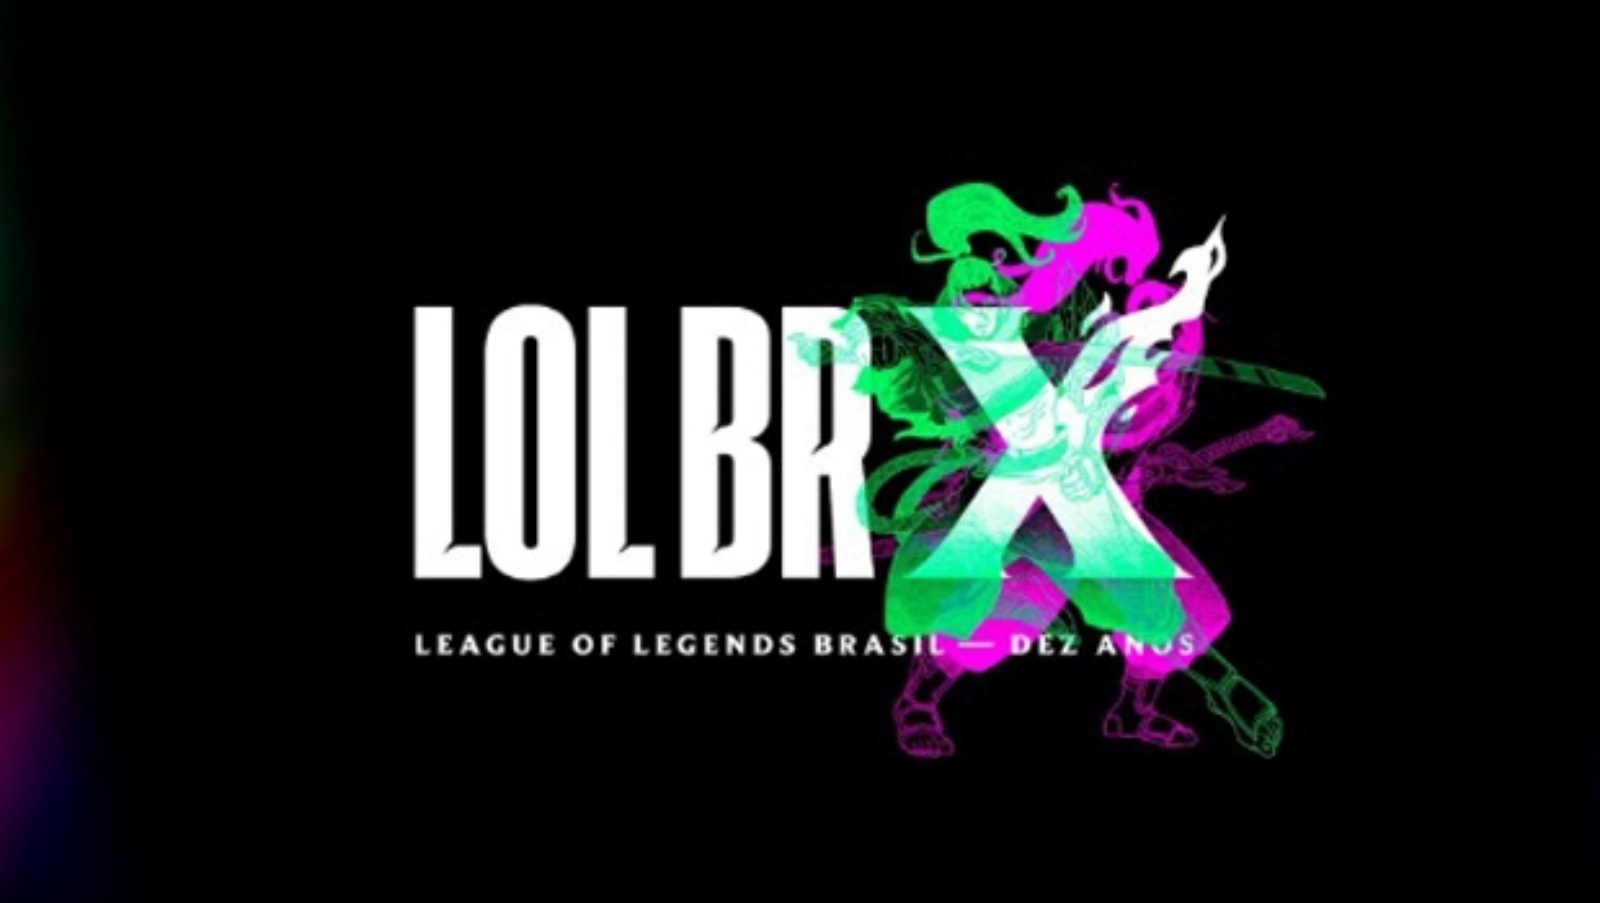 League of Legends Uberaba